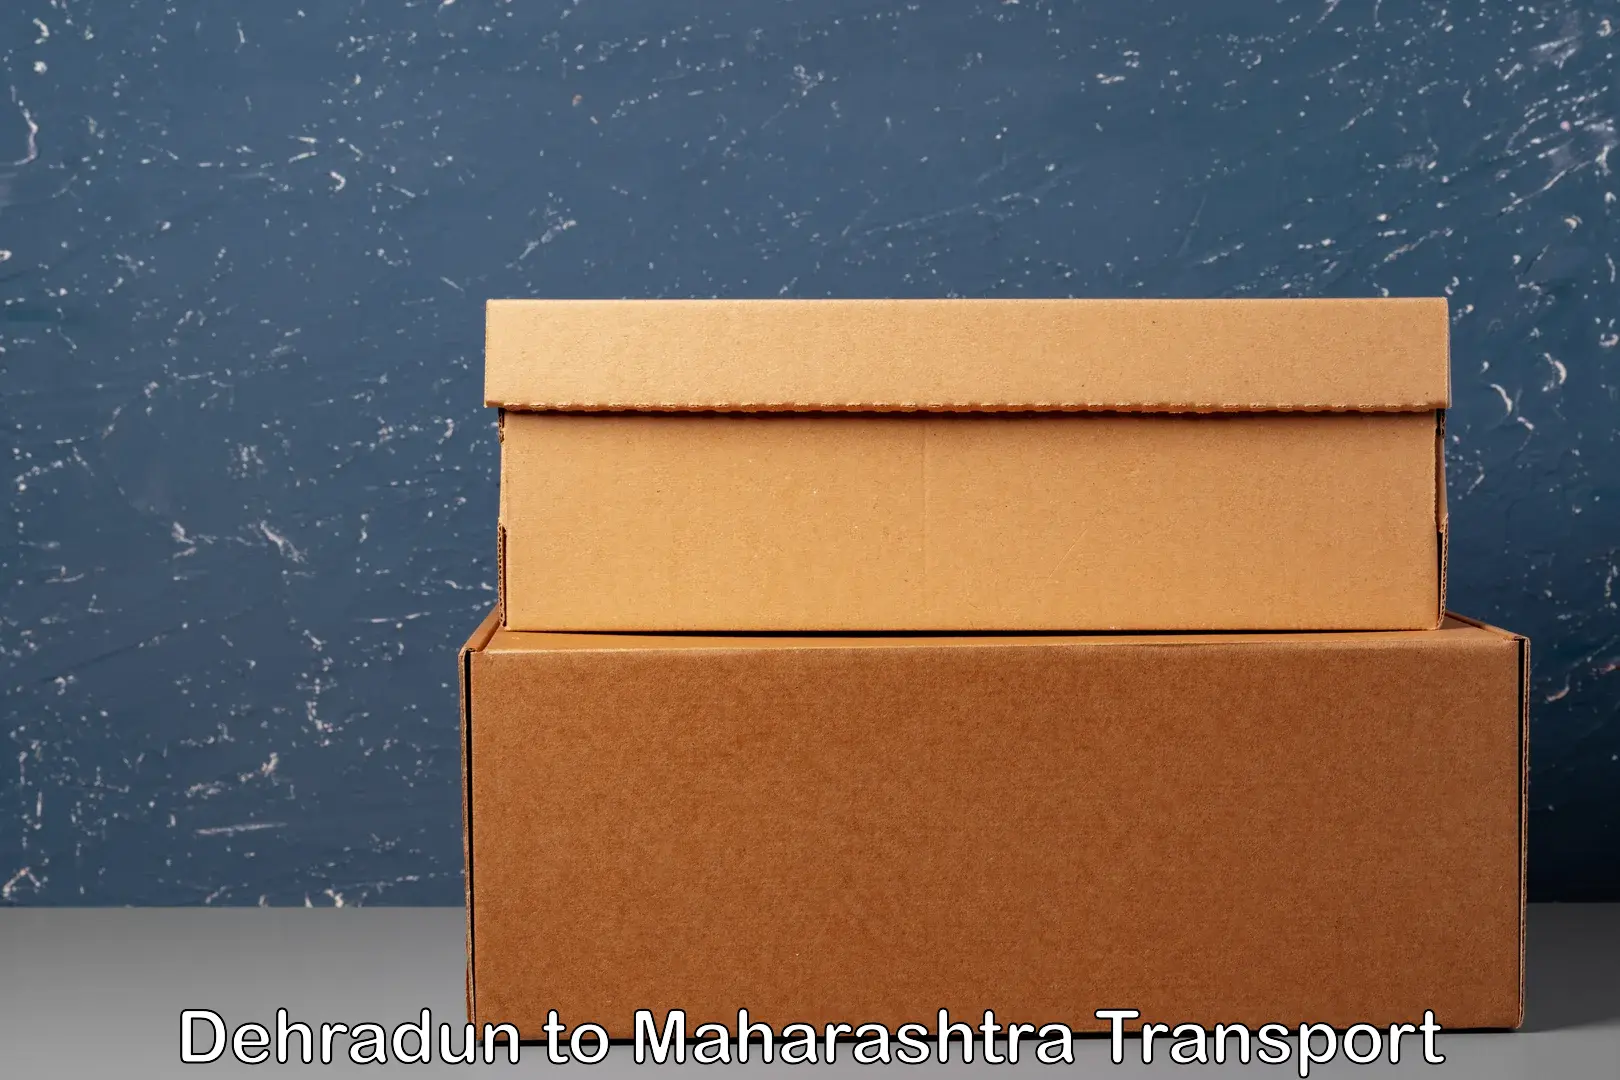 Daily transport service Dehradun to Maharashtra